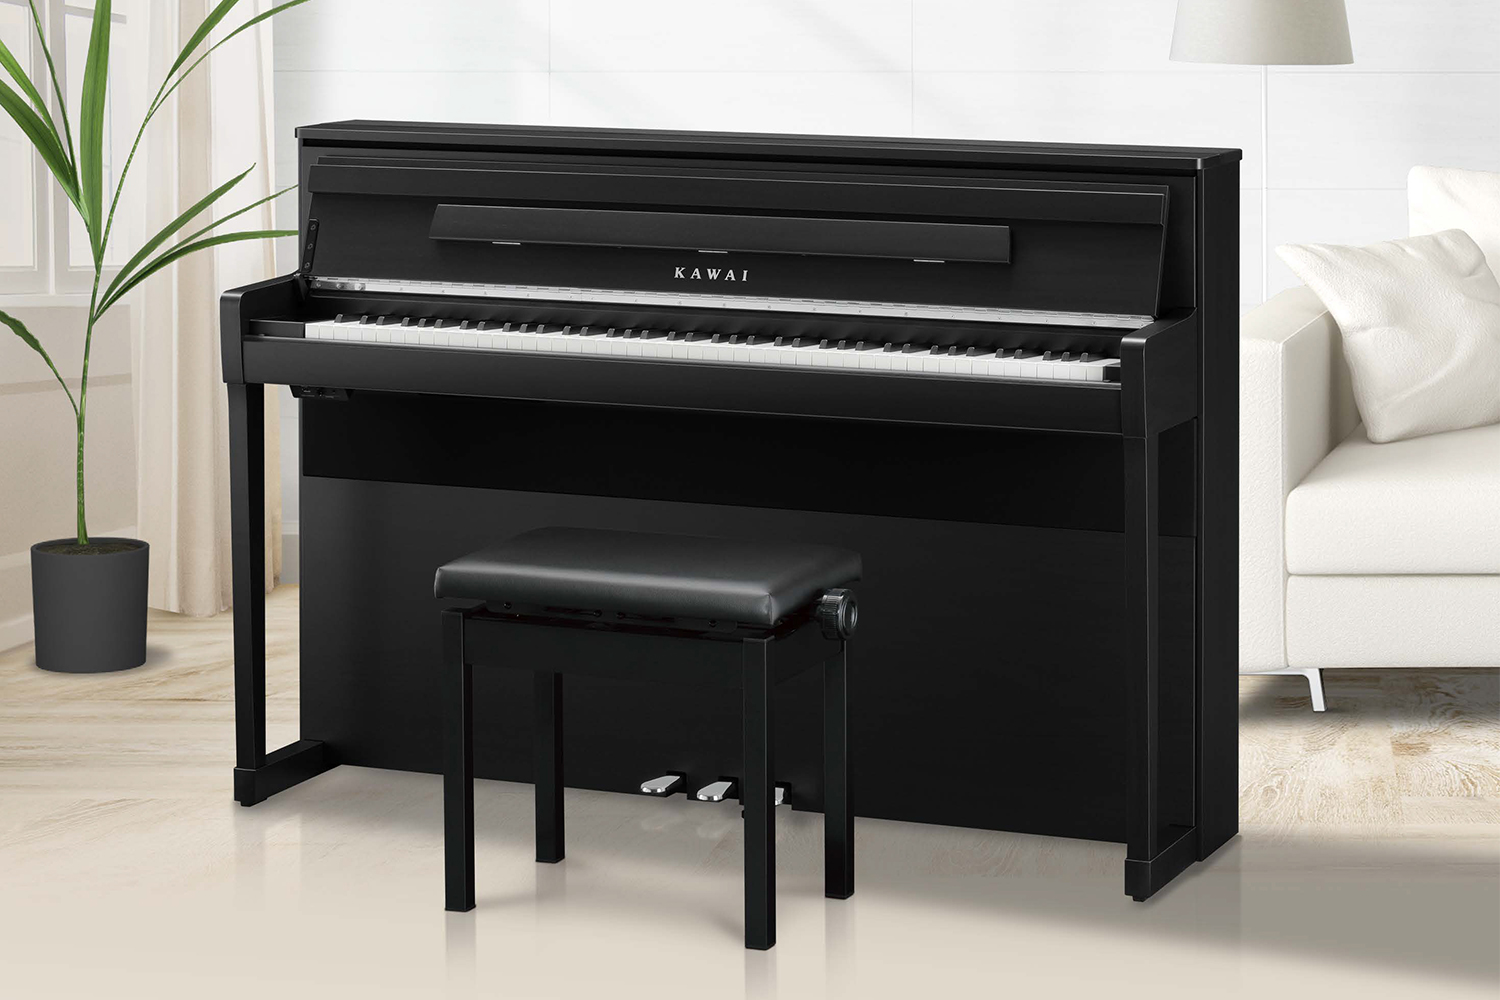 *もっと音楽が好きになる。そんな電子ピアノが産まれました。 この度島村楽器×KAWAIの新しいコラボレーションモデル「CA9900GP」が発売いたします。今まで数々の電子ピアノを製造してきたKAWAIのノウハウを詰め込み、更に当社とのコラボモデルならではの付加価値が加わったこちらの電子ピアノは『皆様 […]